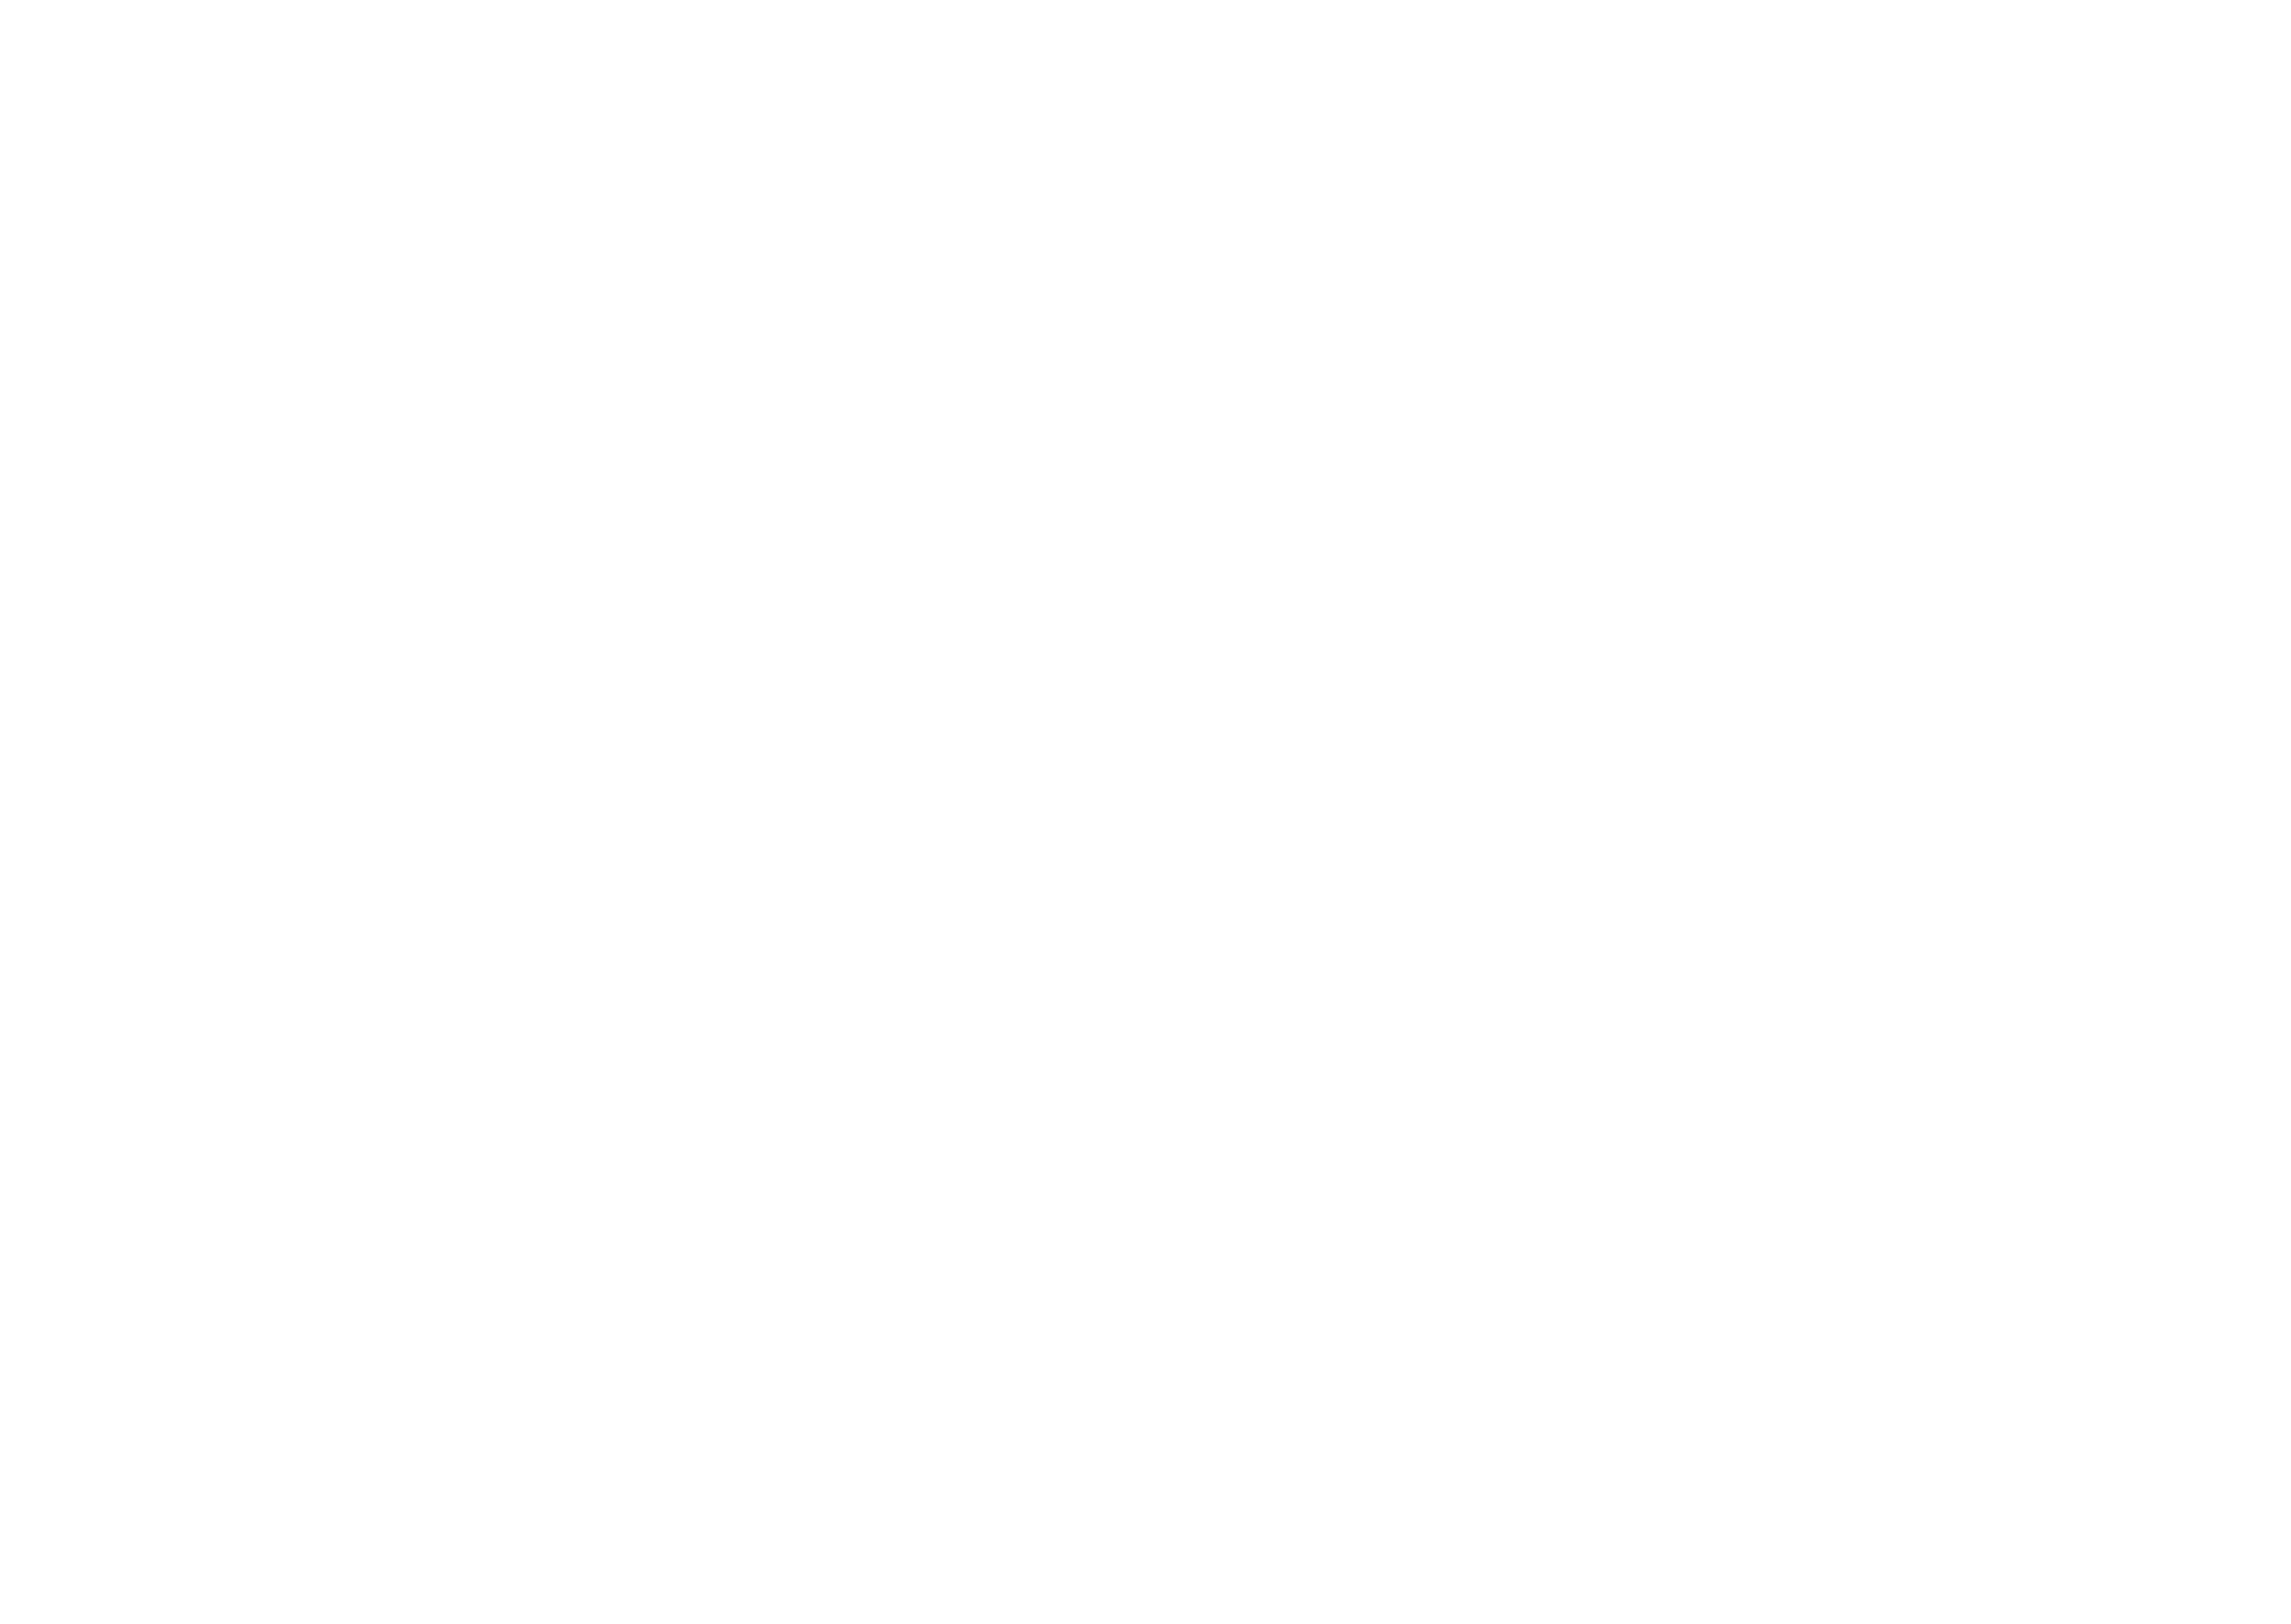 VINGT Paris